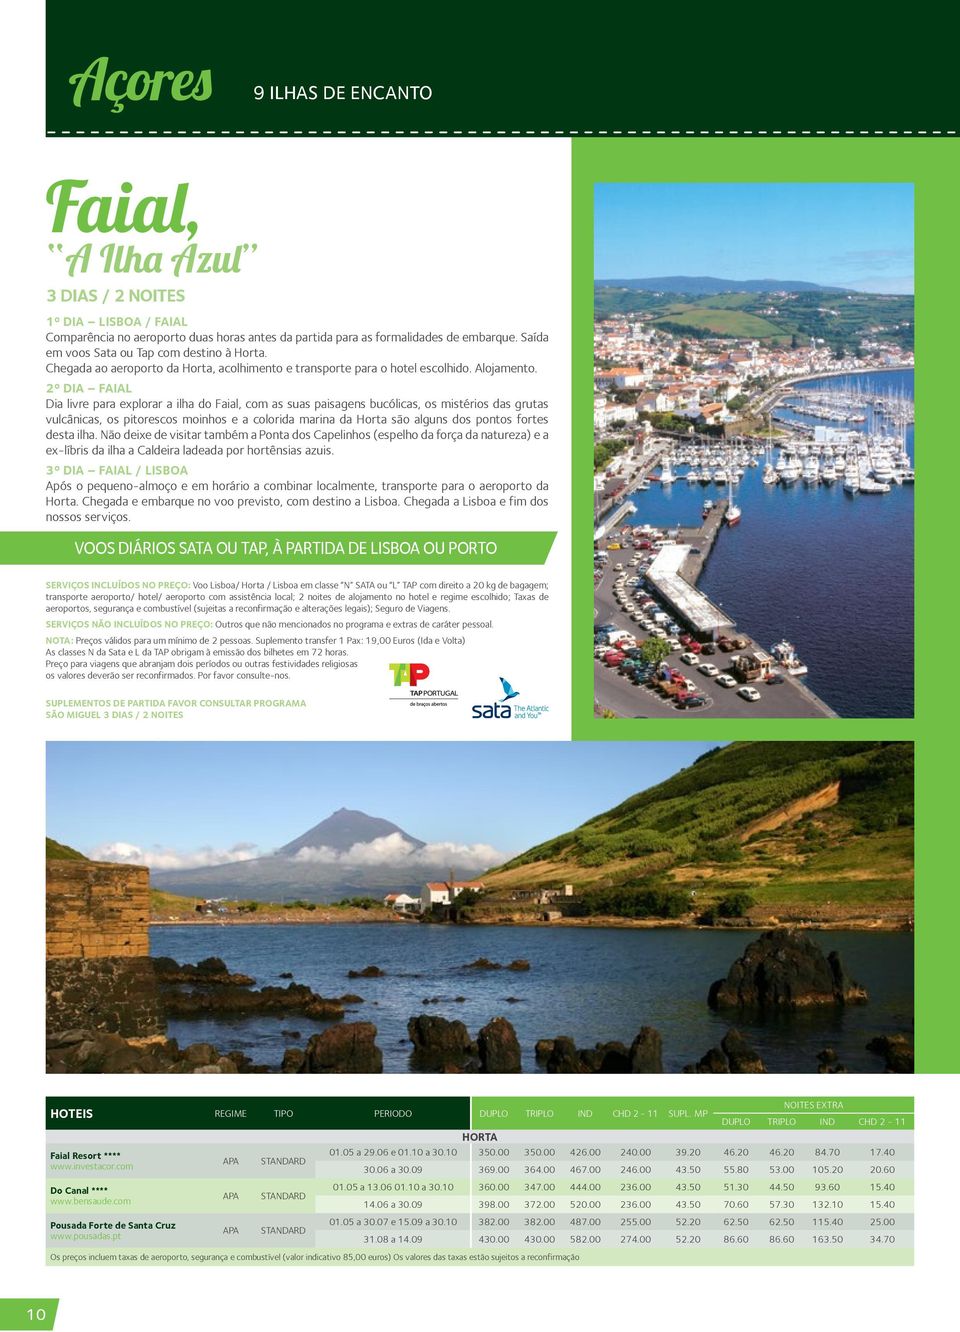 2º DIA FAIAL Dia livre para explorar a ilha do Faial, com as suas paisagens bucólicas, os mistérios das grutas vulcânicas, os pitorescos moinhos e a colorida marina da Horta são alguns dos pontos